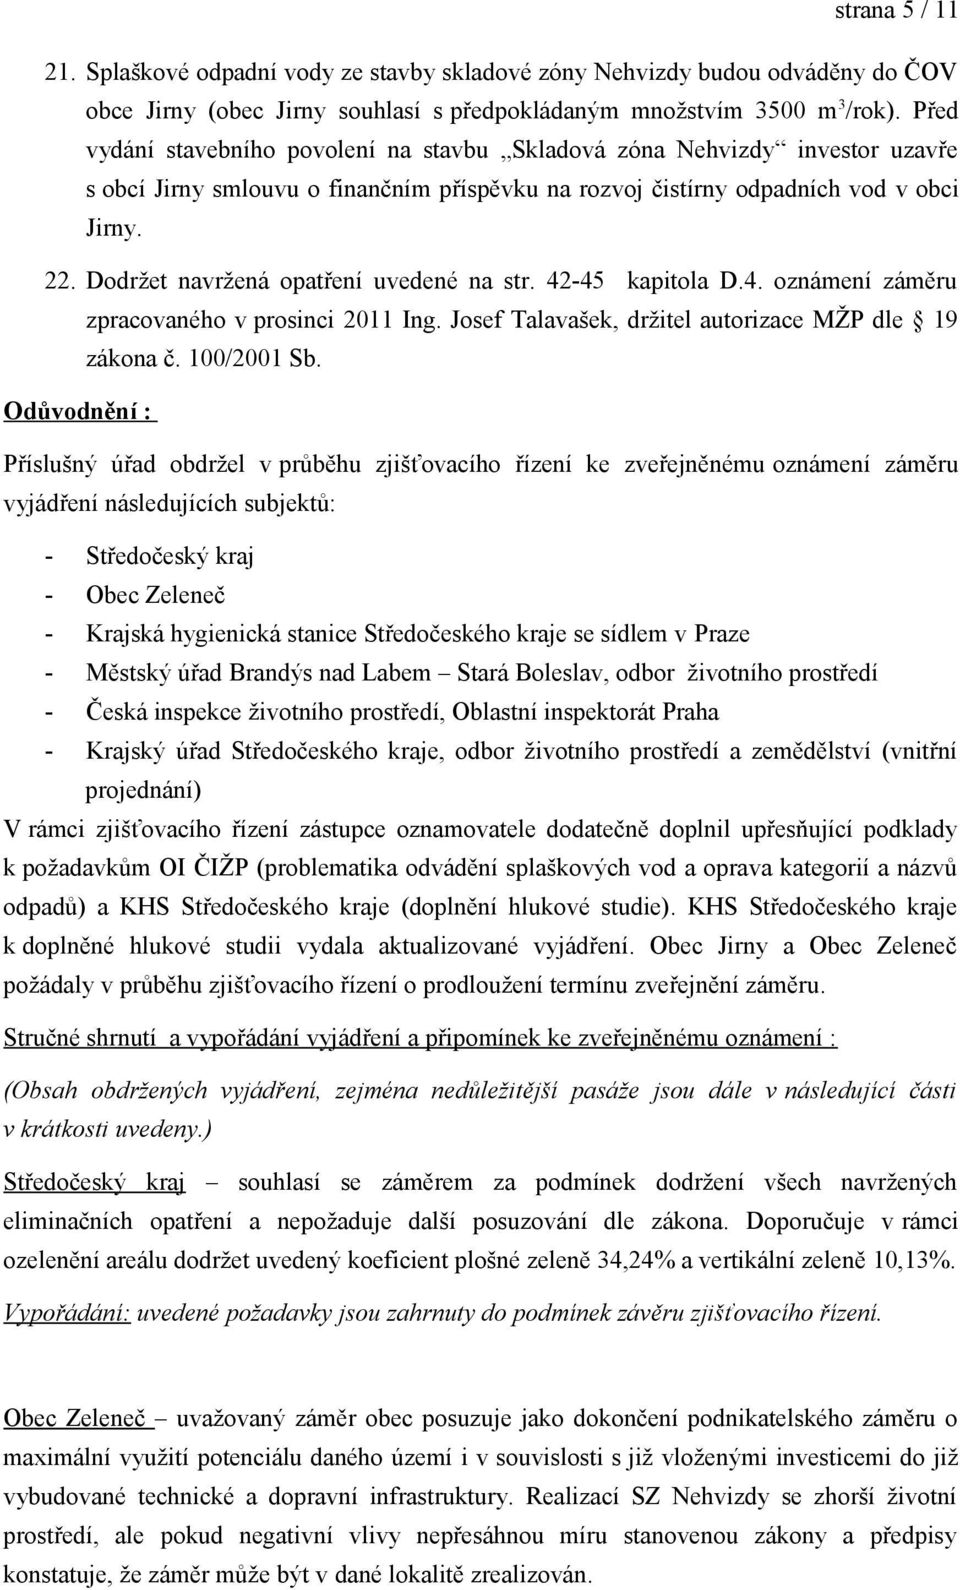 Dodržet navržená opatření uvedené na str. 42-45 kapitola D.4. oznámení záměru zpracovaného v prosinci 2011 Ing. Josef Talavašek, držitel autorizace MŽP dle 19 zákona č. 100/2001 Sb.